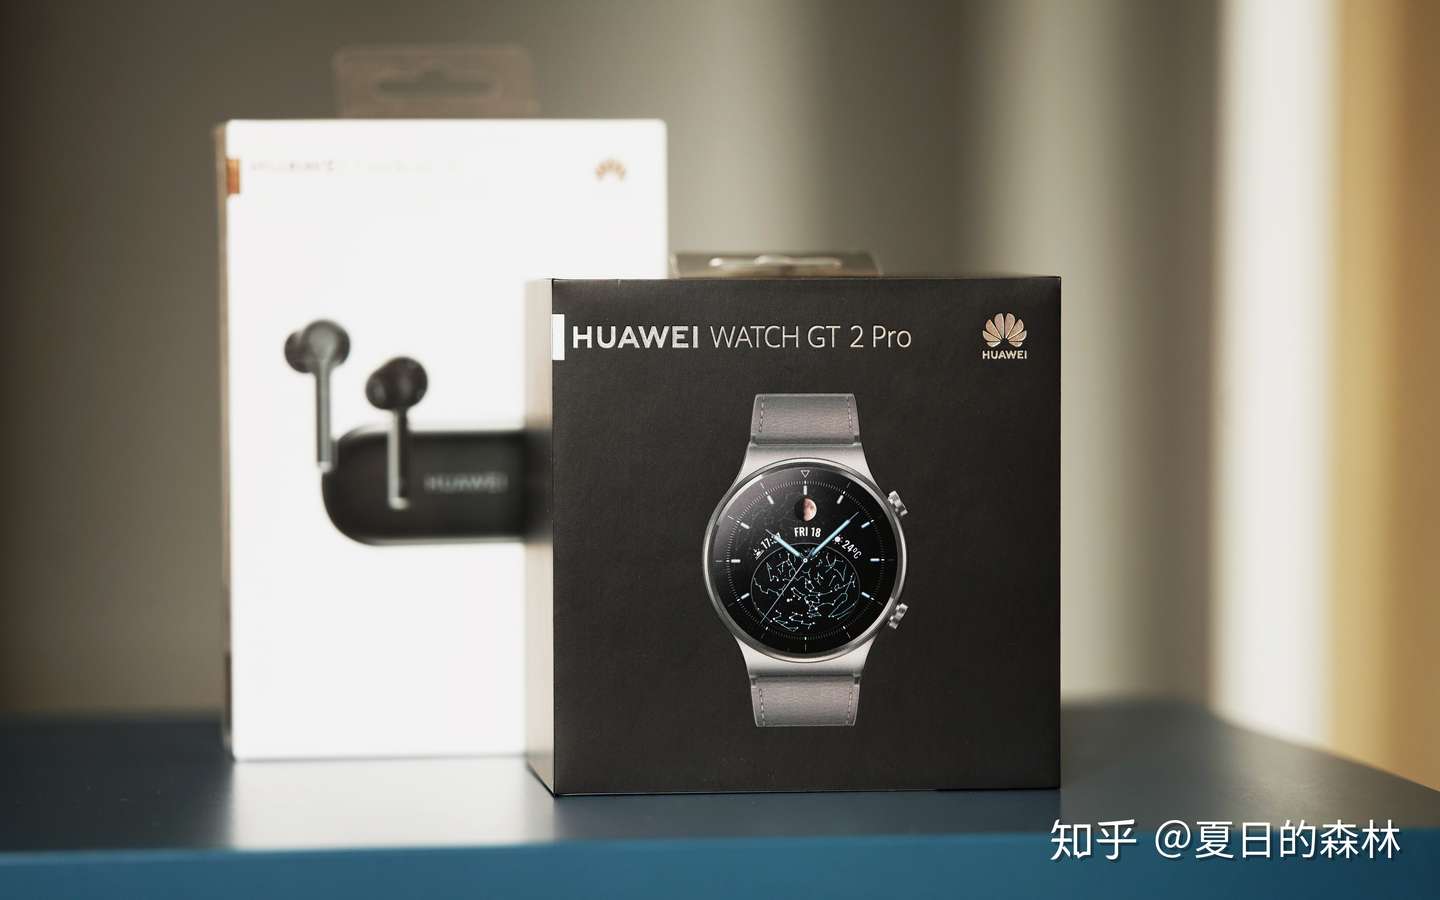 39％割引ブラック系65%OFF【送料無料】 HUAWEI GT2 Pro ほぼ未使用 腕時計(デジタル)  メンズブラック系-WWW.STOILMGT.COM